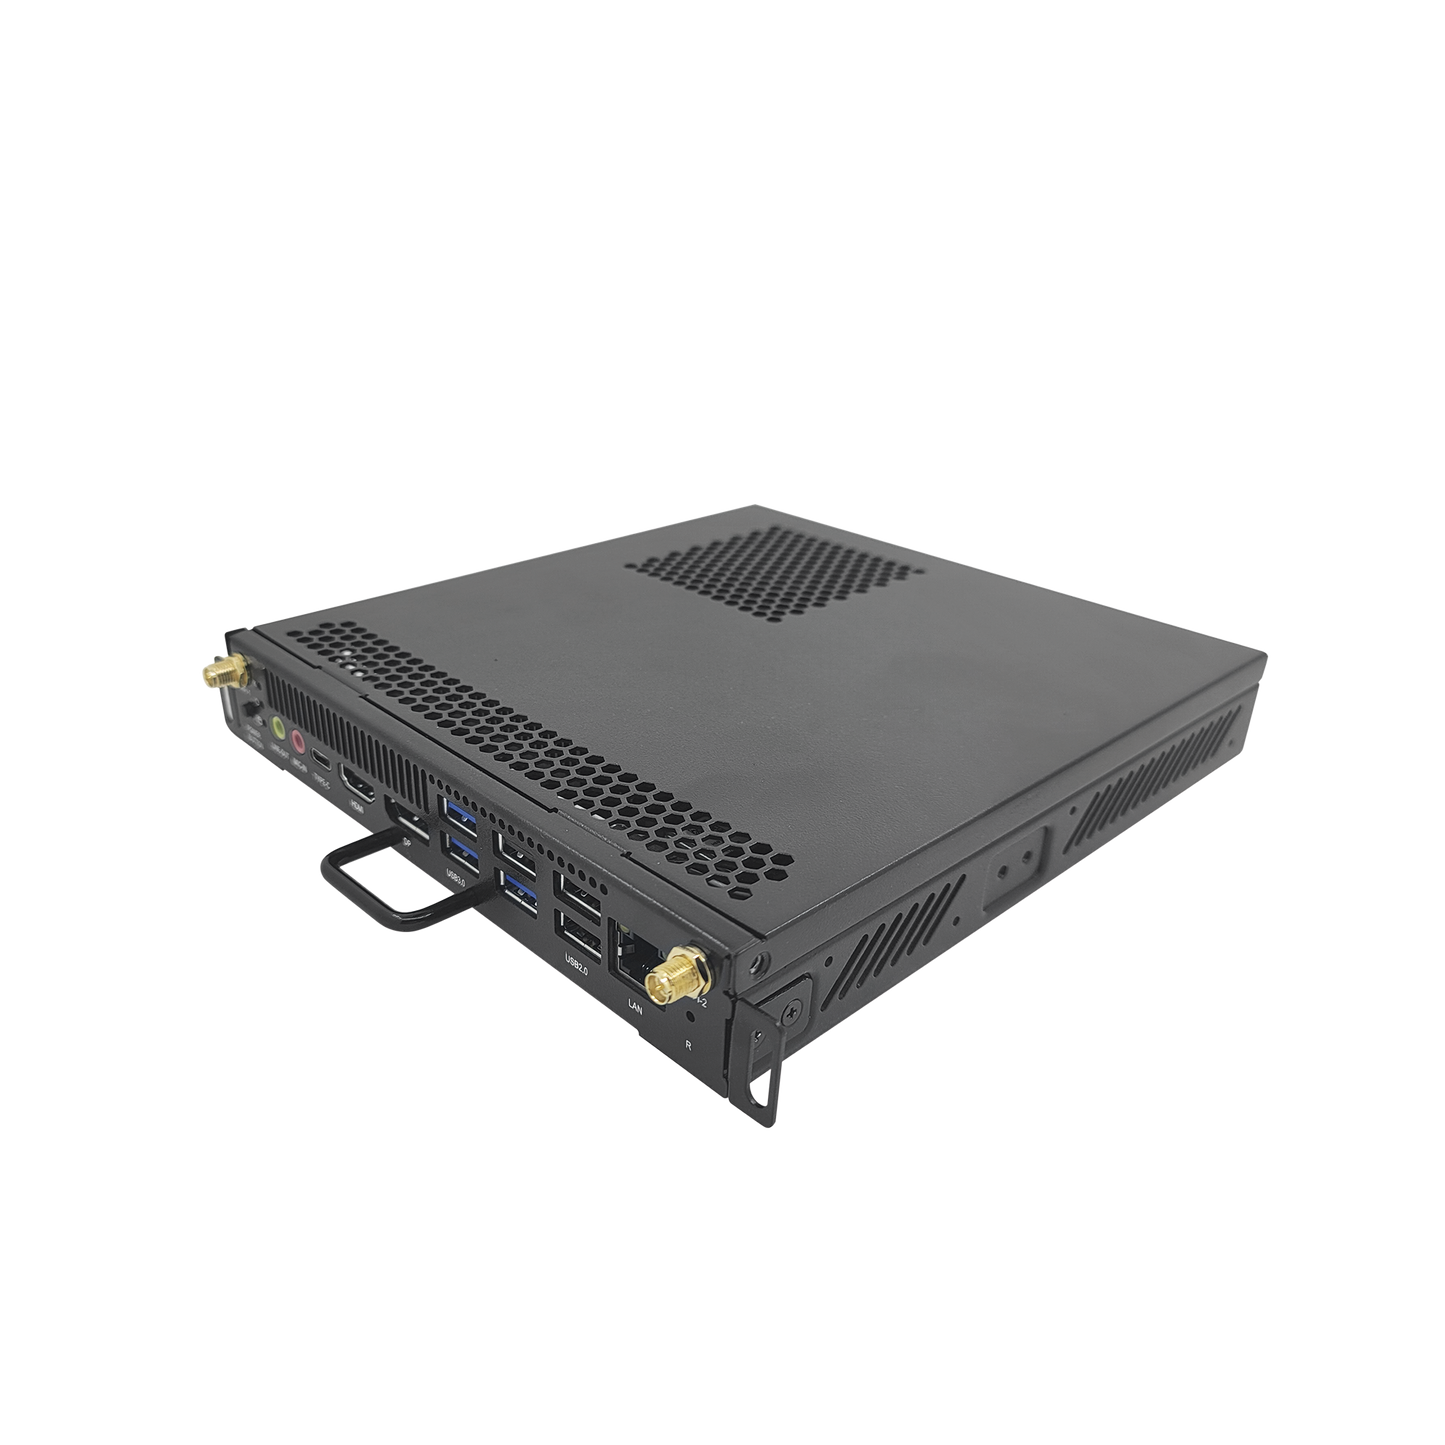 OPS Modular Compatible con DS-D5BXXRB/D / Core i5 9400H / 8 GB RAM / SSD de 256 GB / Bluetooth 4.0 / Salida HDMI y DP / 1 Puerto RJ45 / Soporta H.265 y Resolución 4K